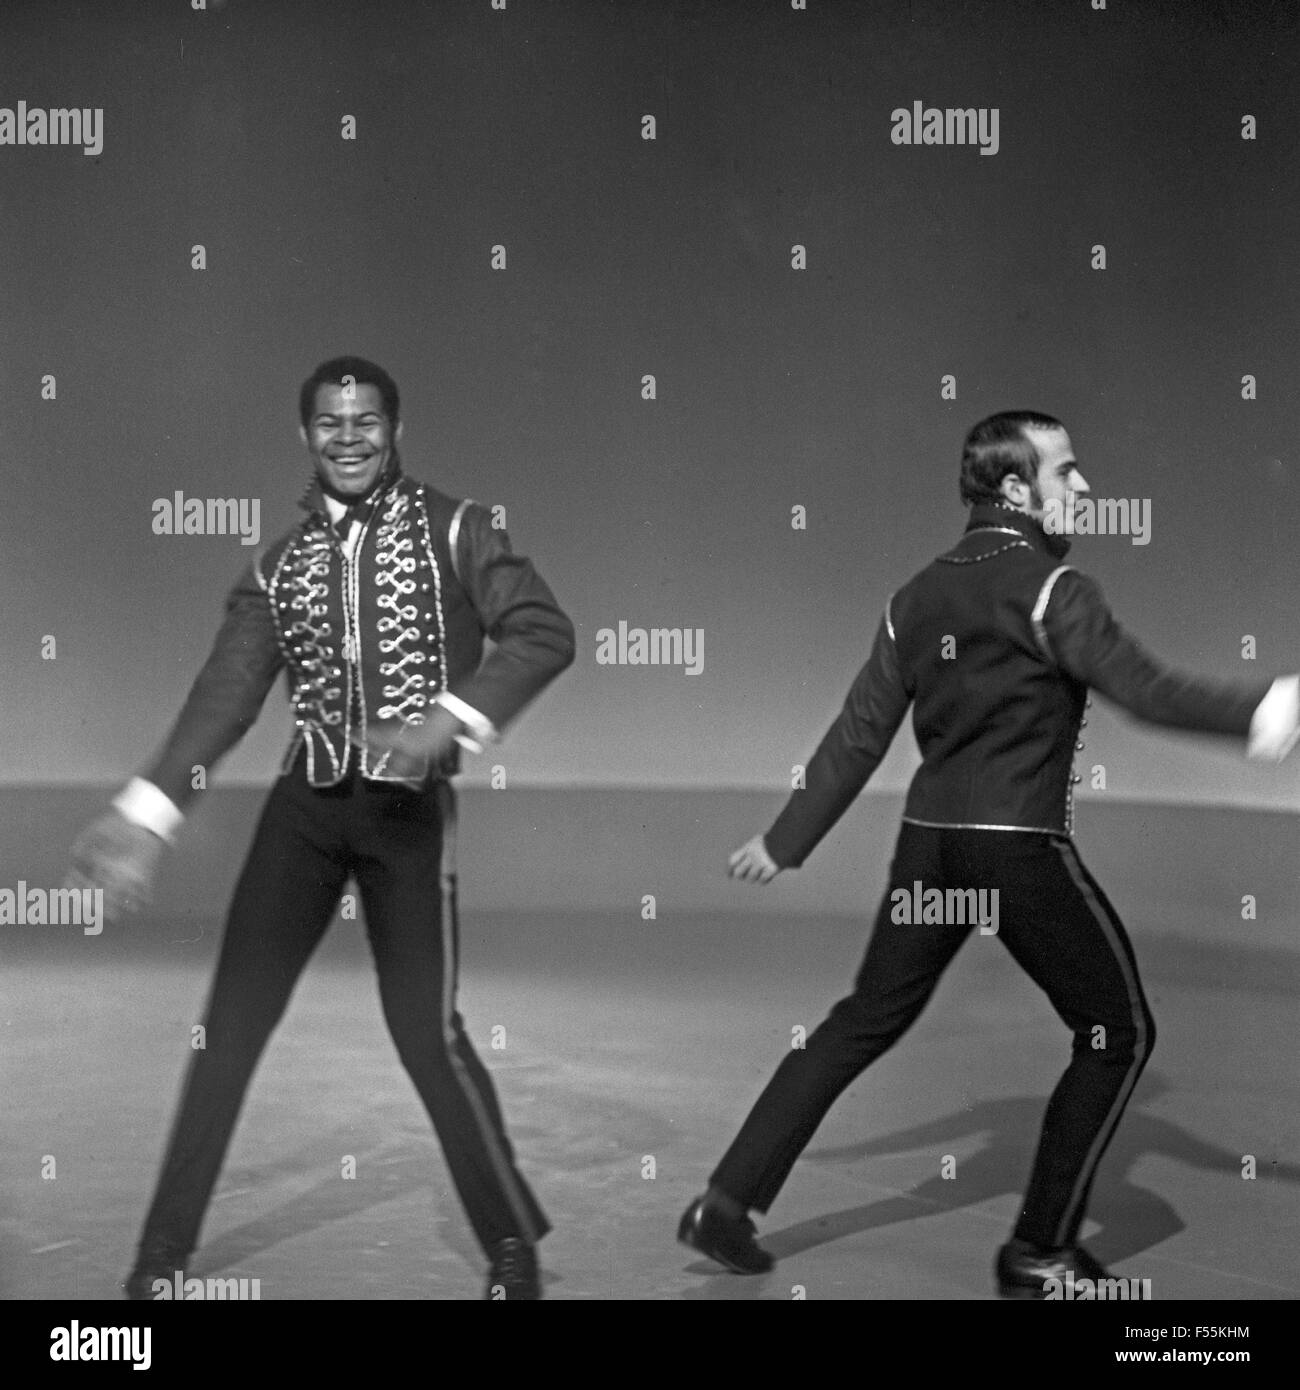 Das Tanzensemble 'Black New World' aus New York bei einem Aufritt im Studio Hamburg, Deutschland 1960er Jahre. New York dance company 'Black New World' performing at the NDR studio in Hamburg, Germany 1960s. Stock Photo